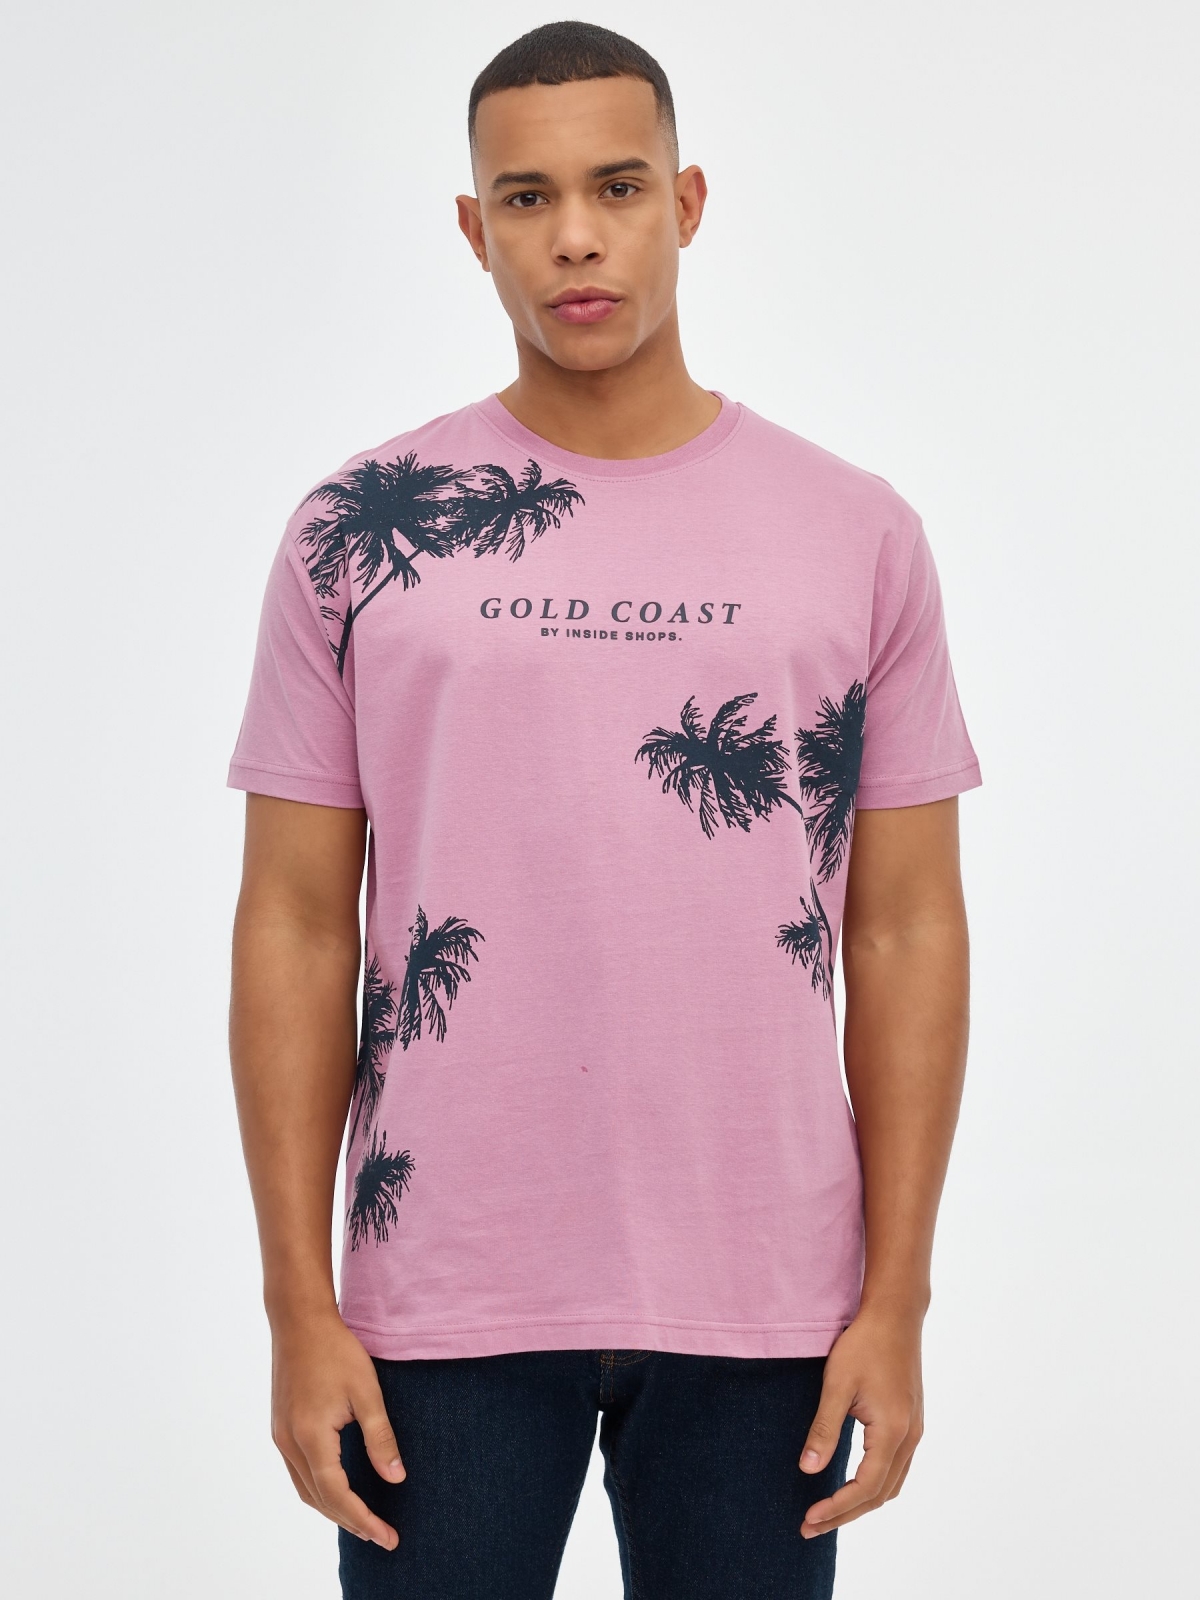 T-shirt da Costa de Ouro púrpura vista meia frontal